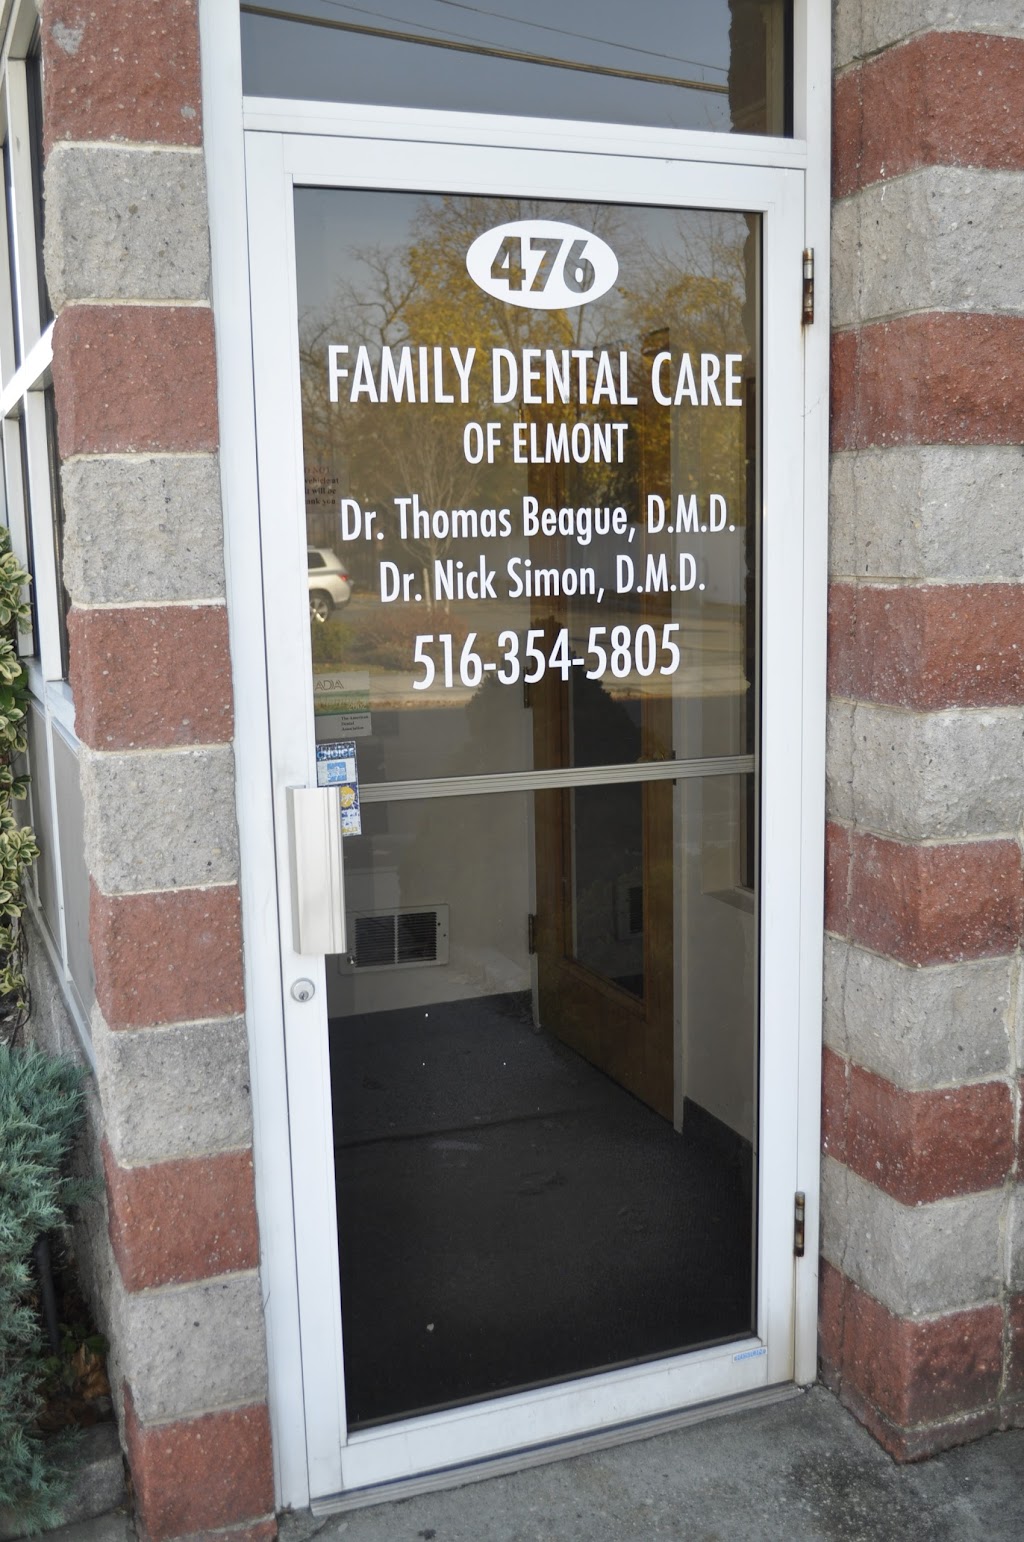 Family Dental Care of Elmont | 476 Elmont Rd, Elmont, NY 11003 | Phone: (516) 354-5805